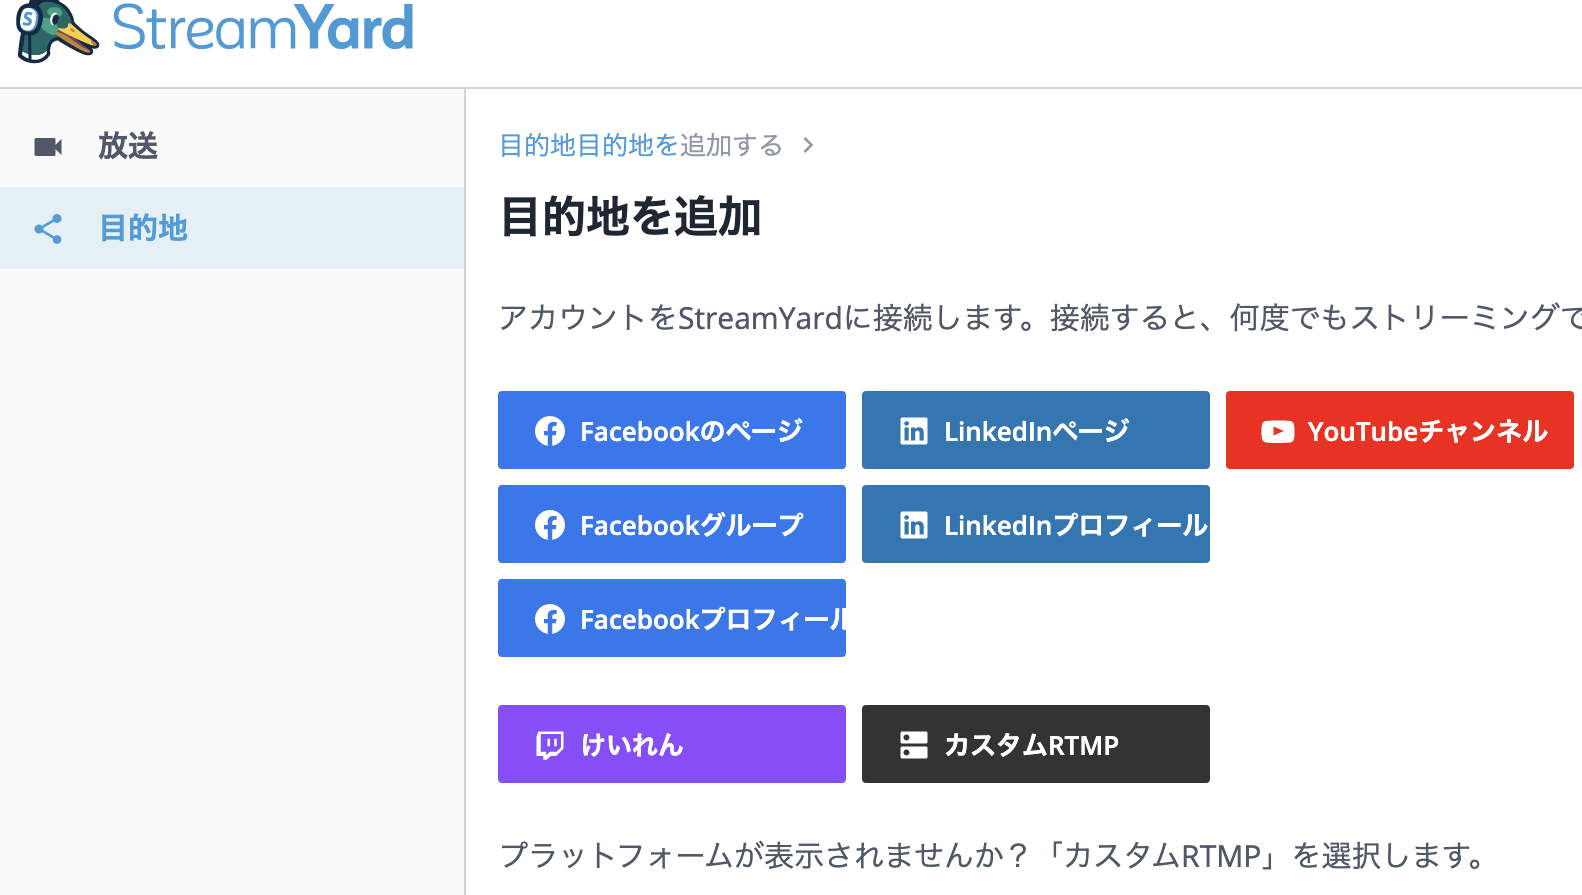 StreamYard（ストリームヤード）の設定方法と日本語表示、ライブ配信先との連携方法